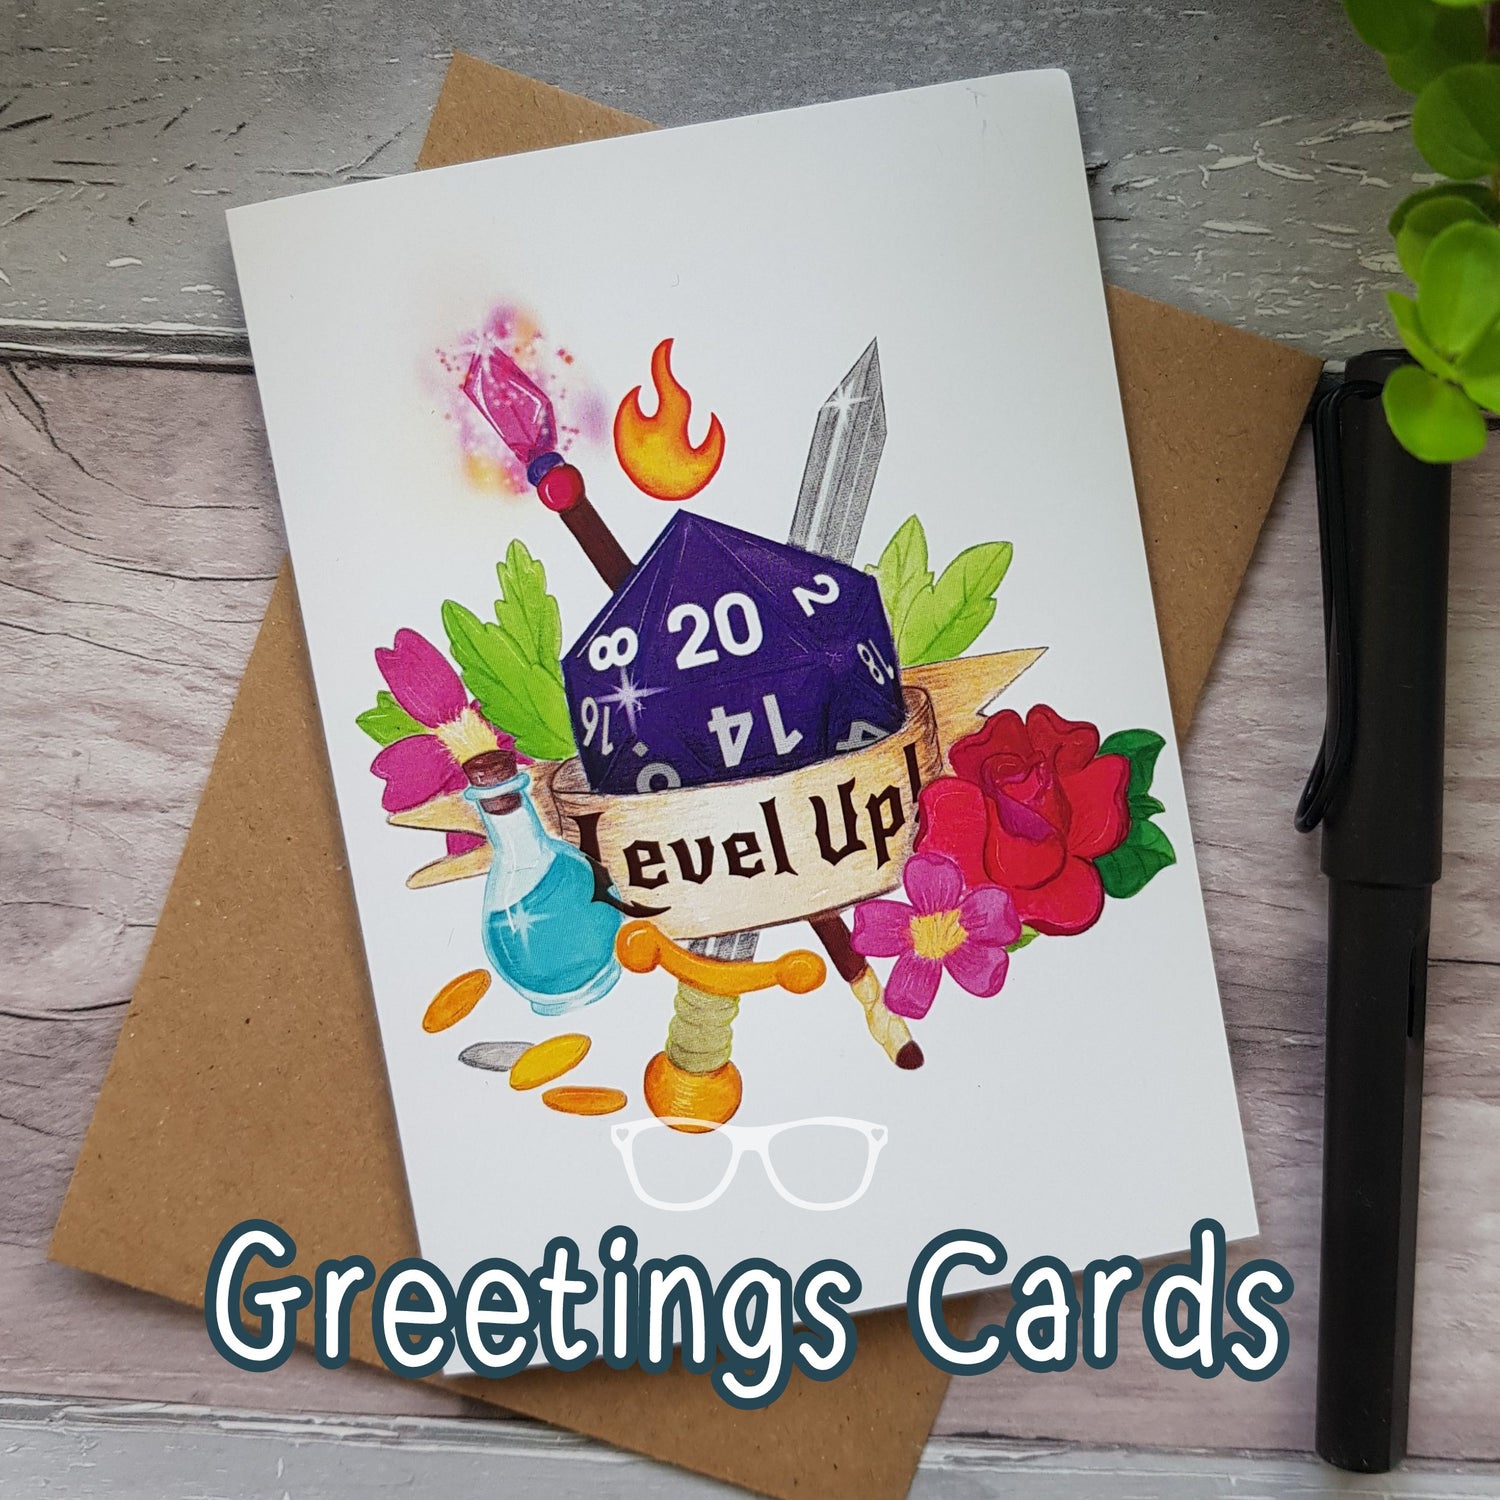 Greetings cards by geeks for geeks